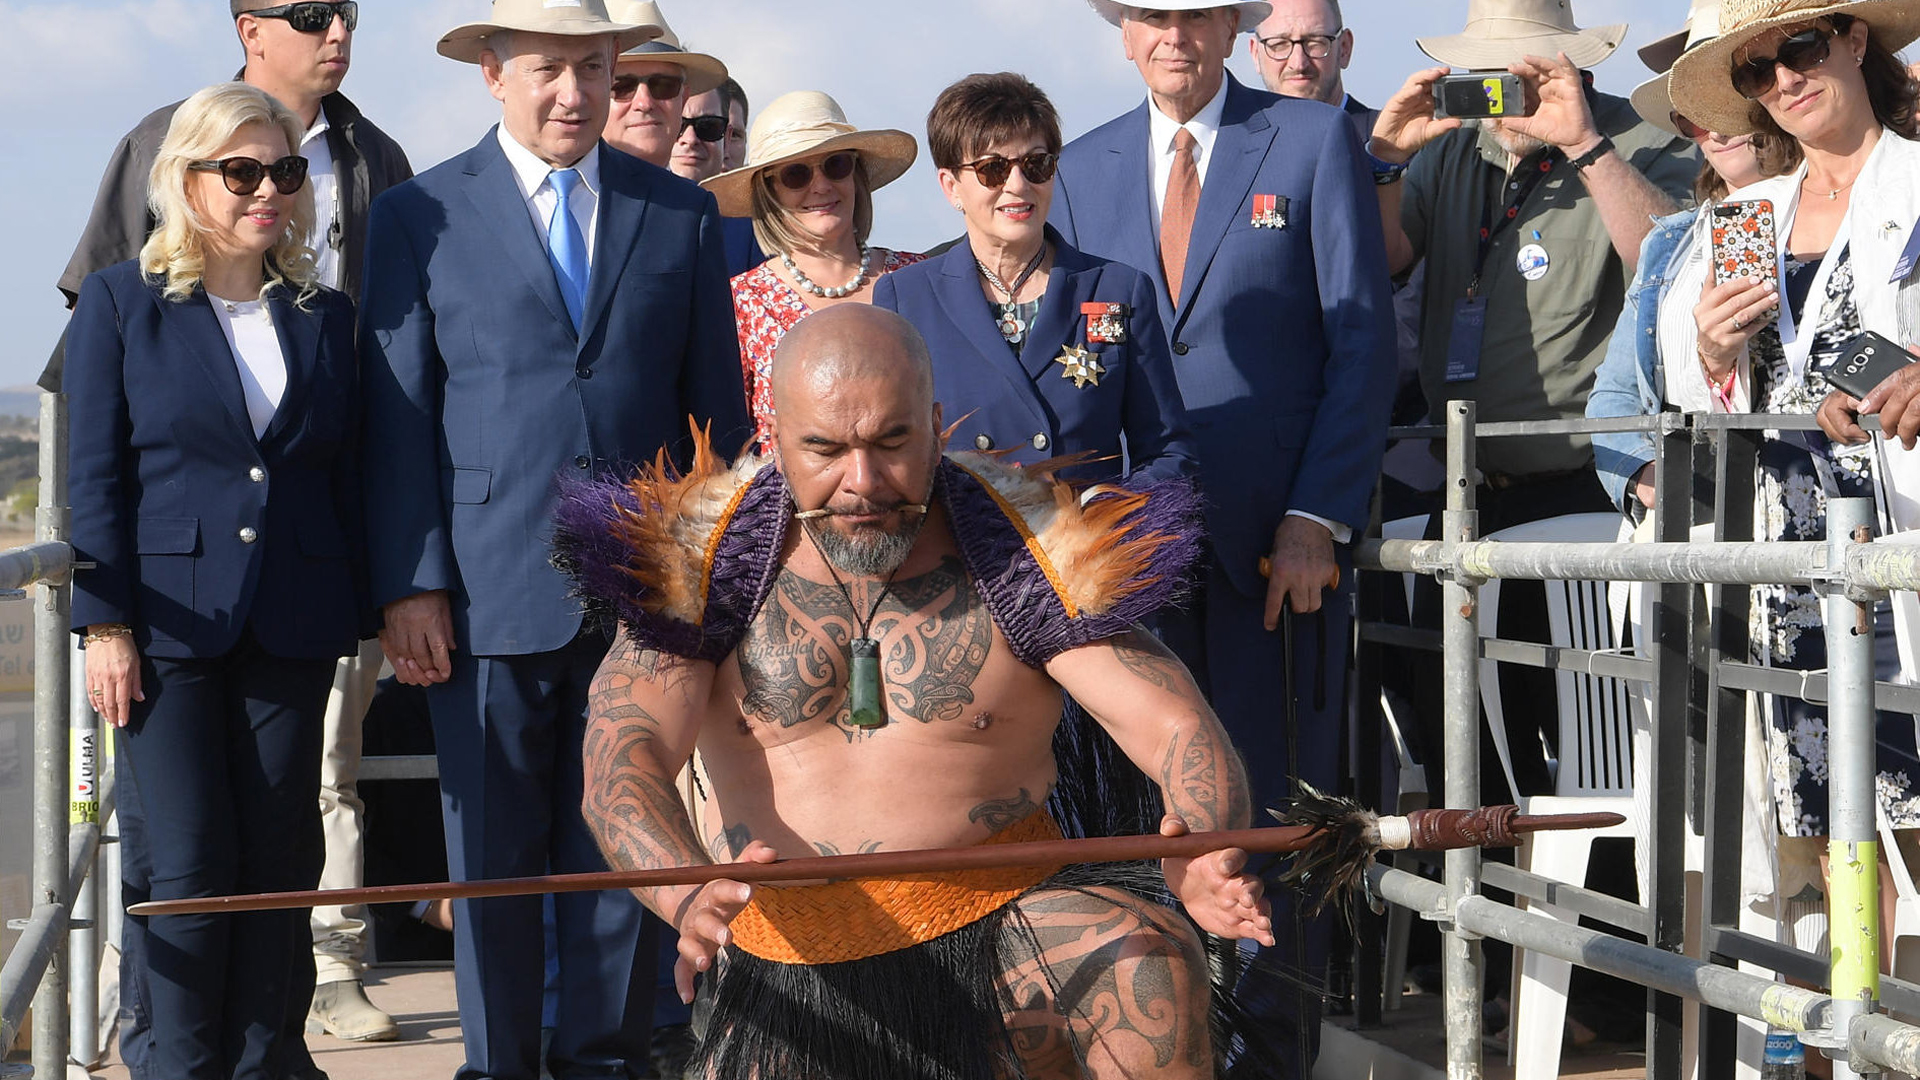 Sarah und Benjamin Netanjahu, Patsy Reddy und Malcolm Turnbull beobachten einen Maori bei einem traditionellen Tanz